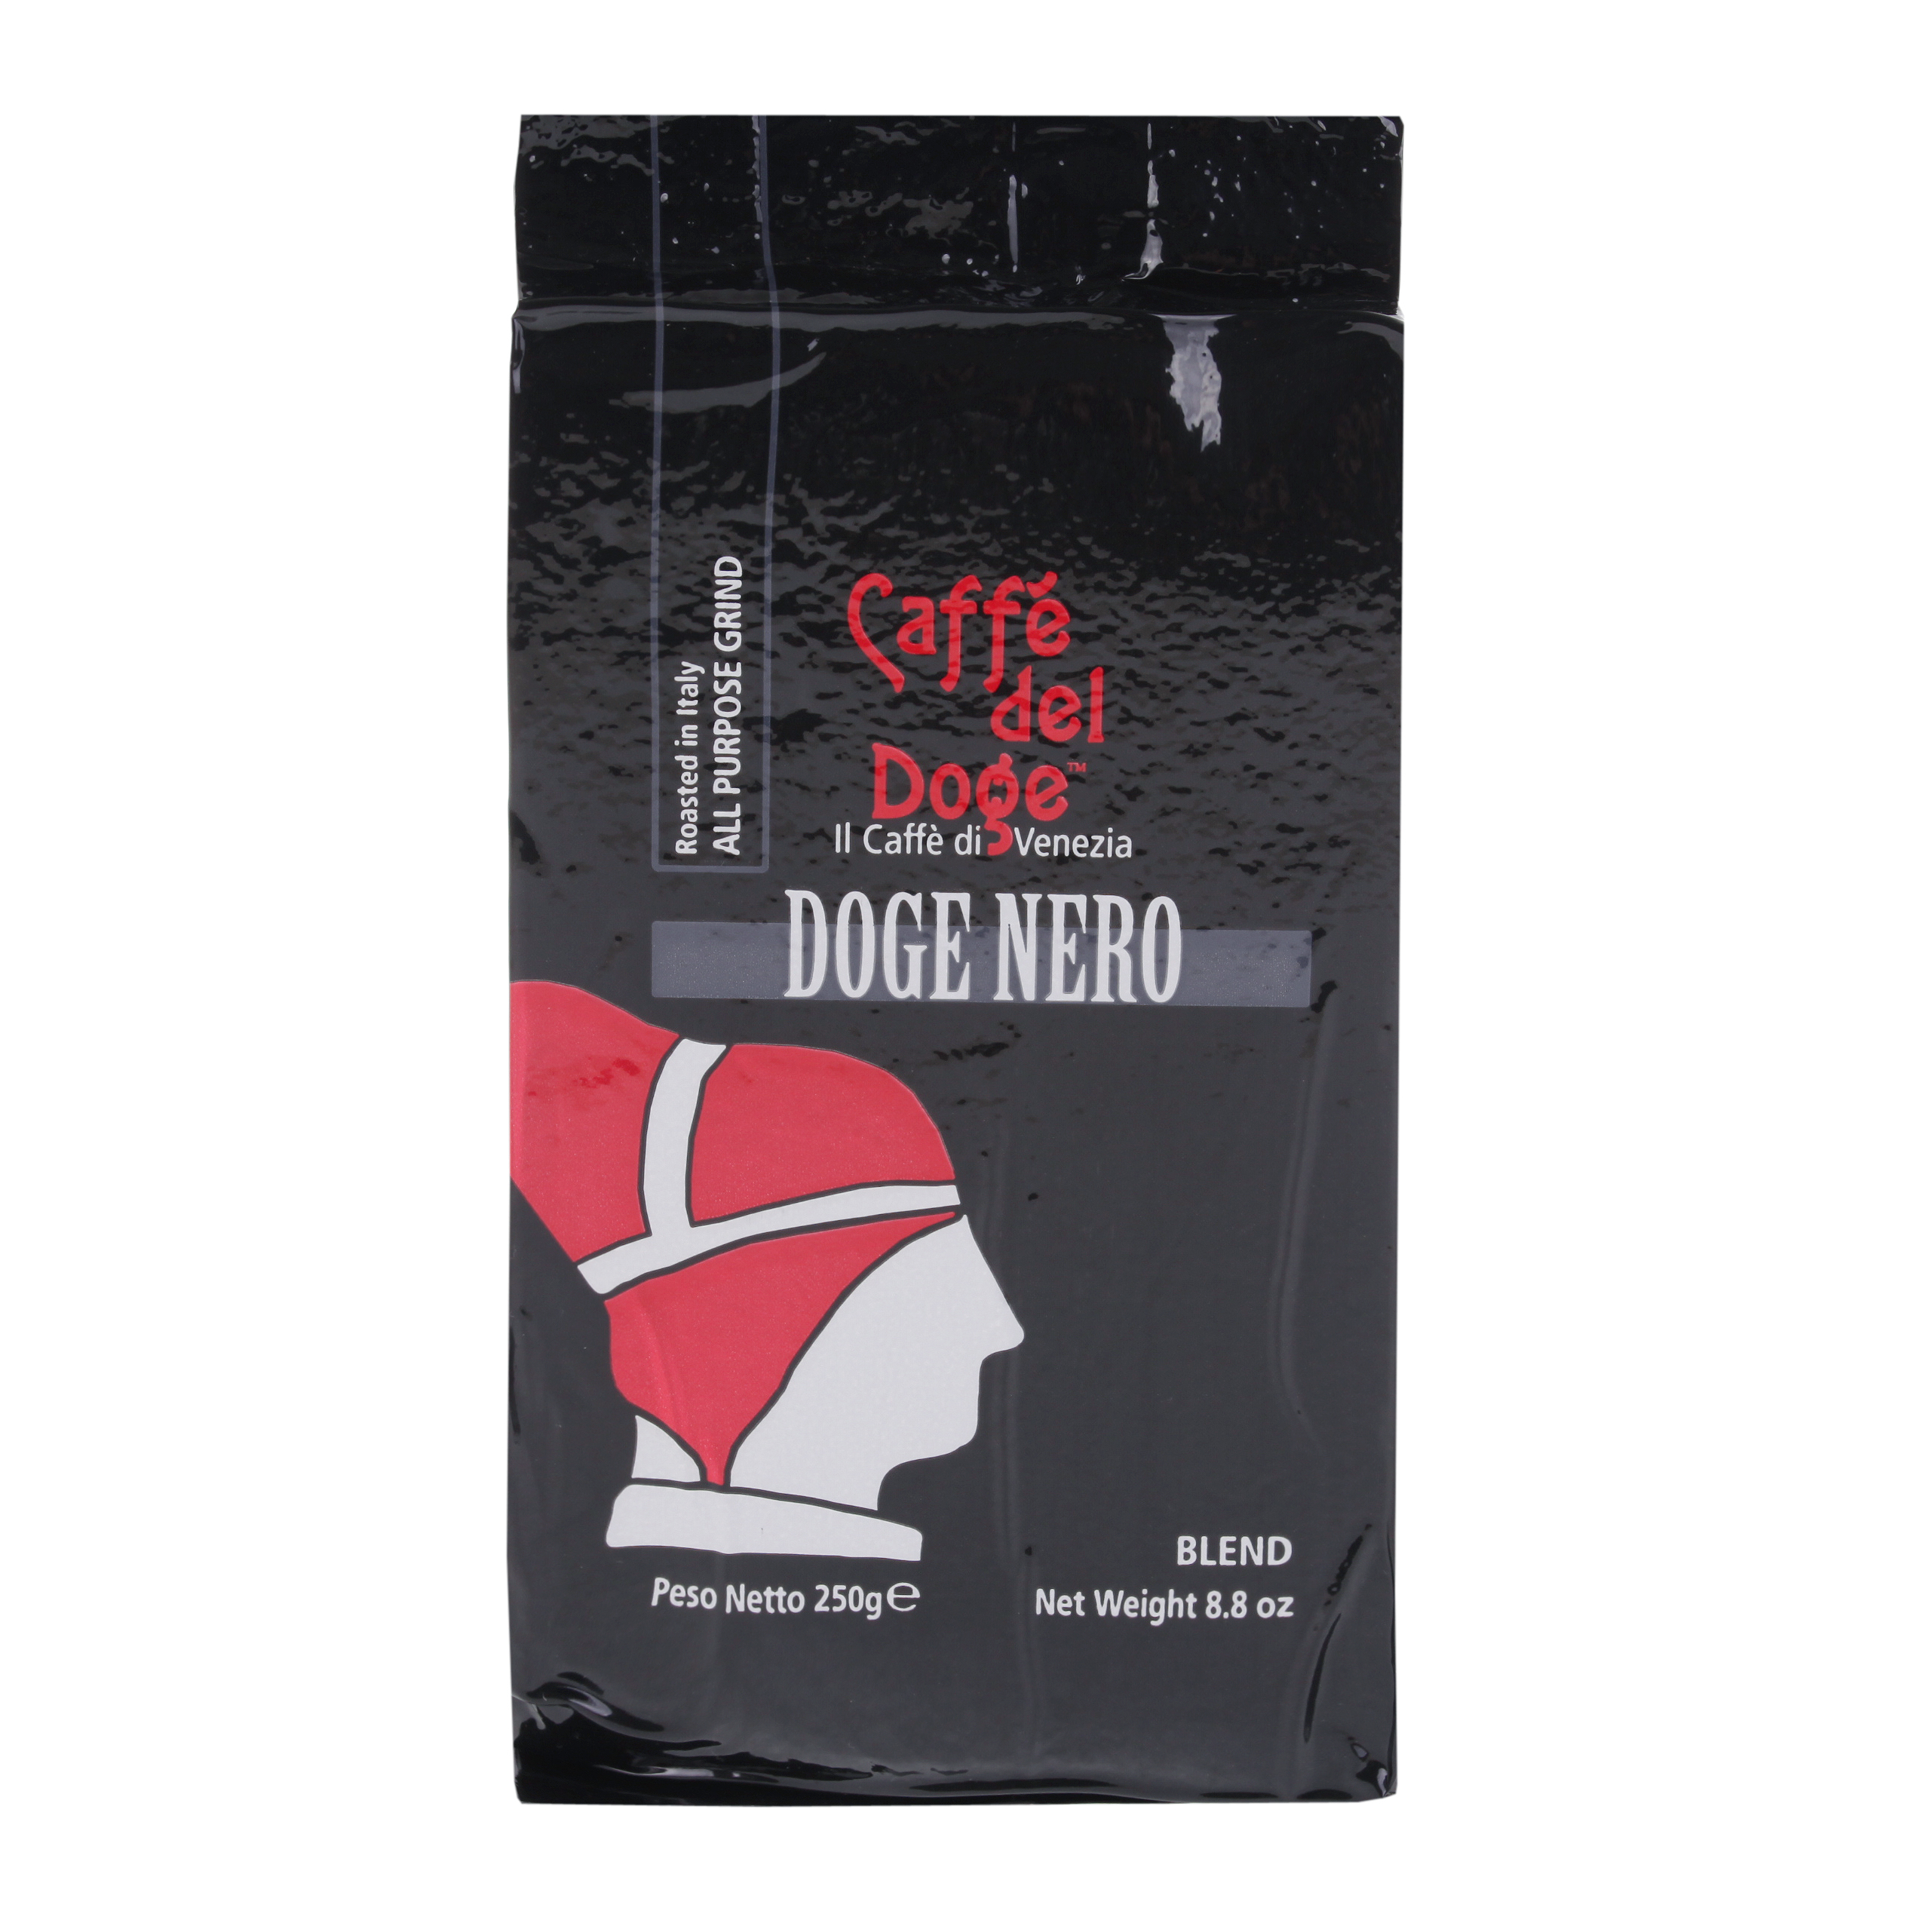 Caffé del Doge Nero